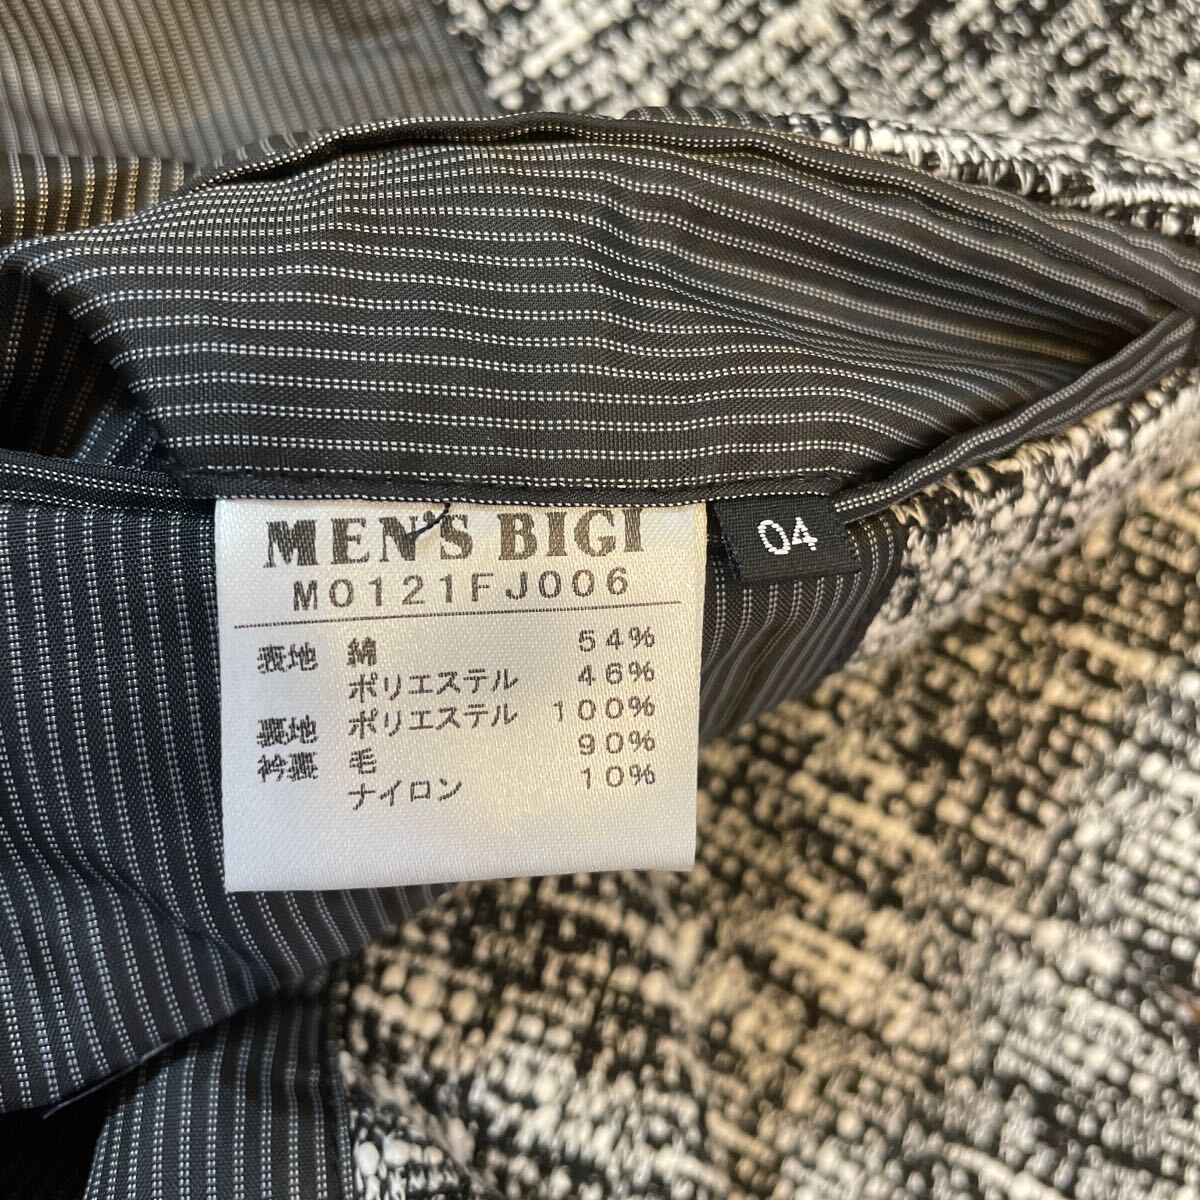 メンズビギ ジャケット 2釦 白×黒ツィード風 04サイズ の画像6